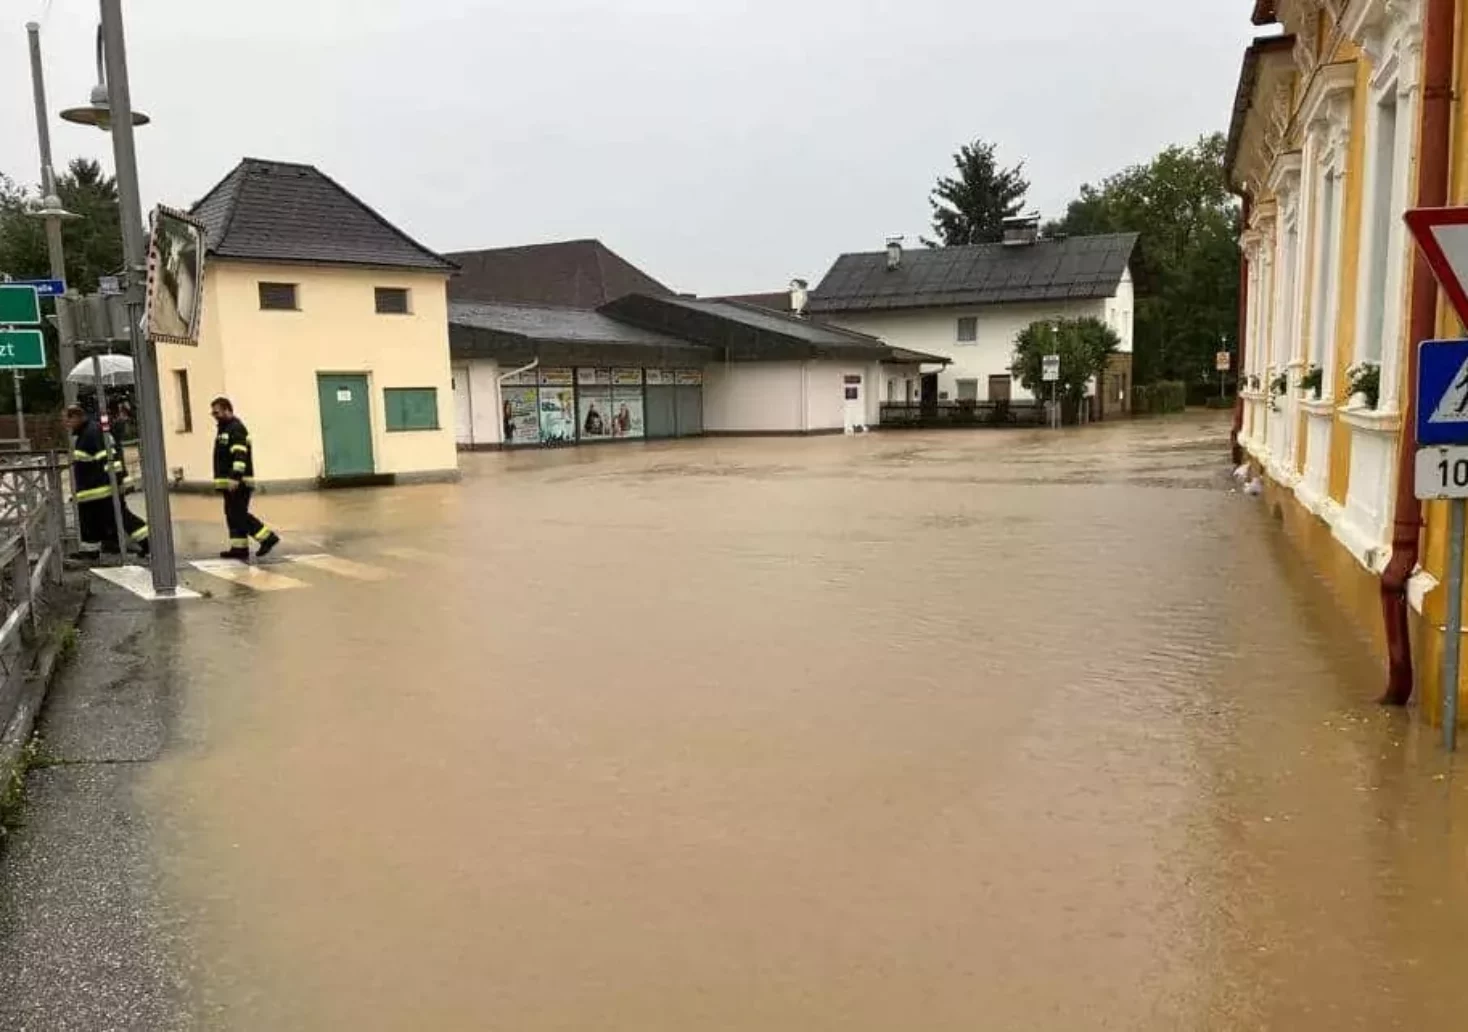 Bild auf 5min.at zeigt eine überschwemmte Straße.